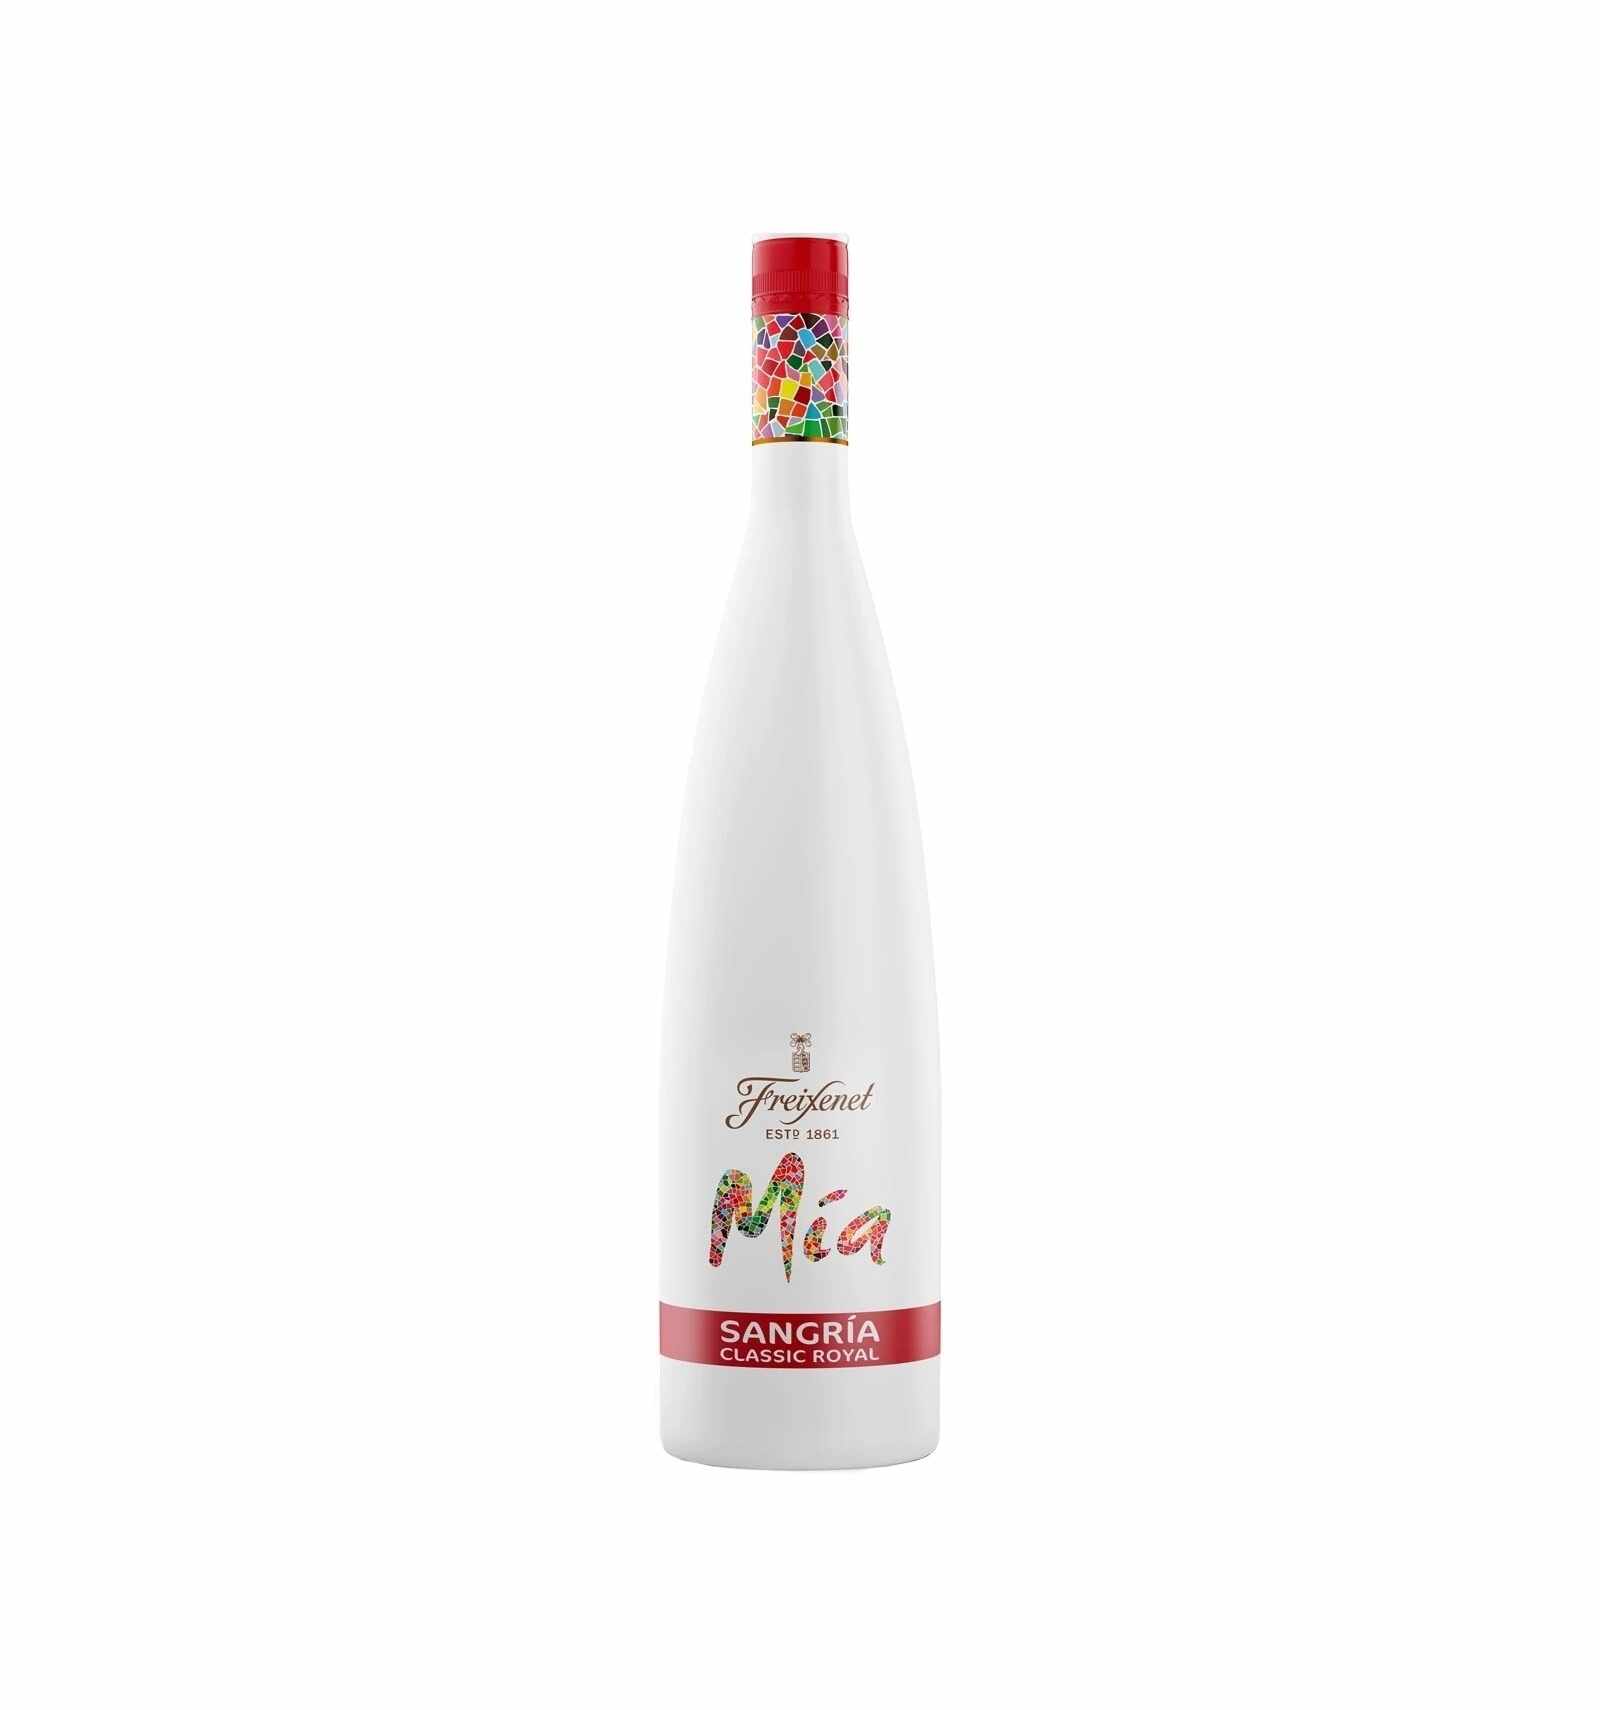 Vin rosu Sangria, Freixenet Mia, 8.5% alc., 0.75L, Spania